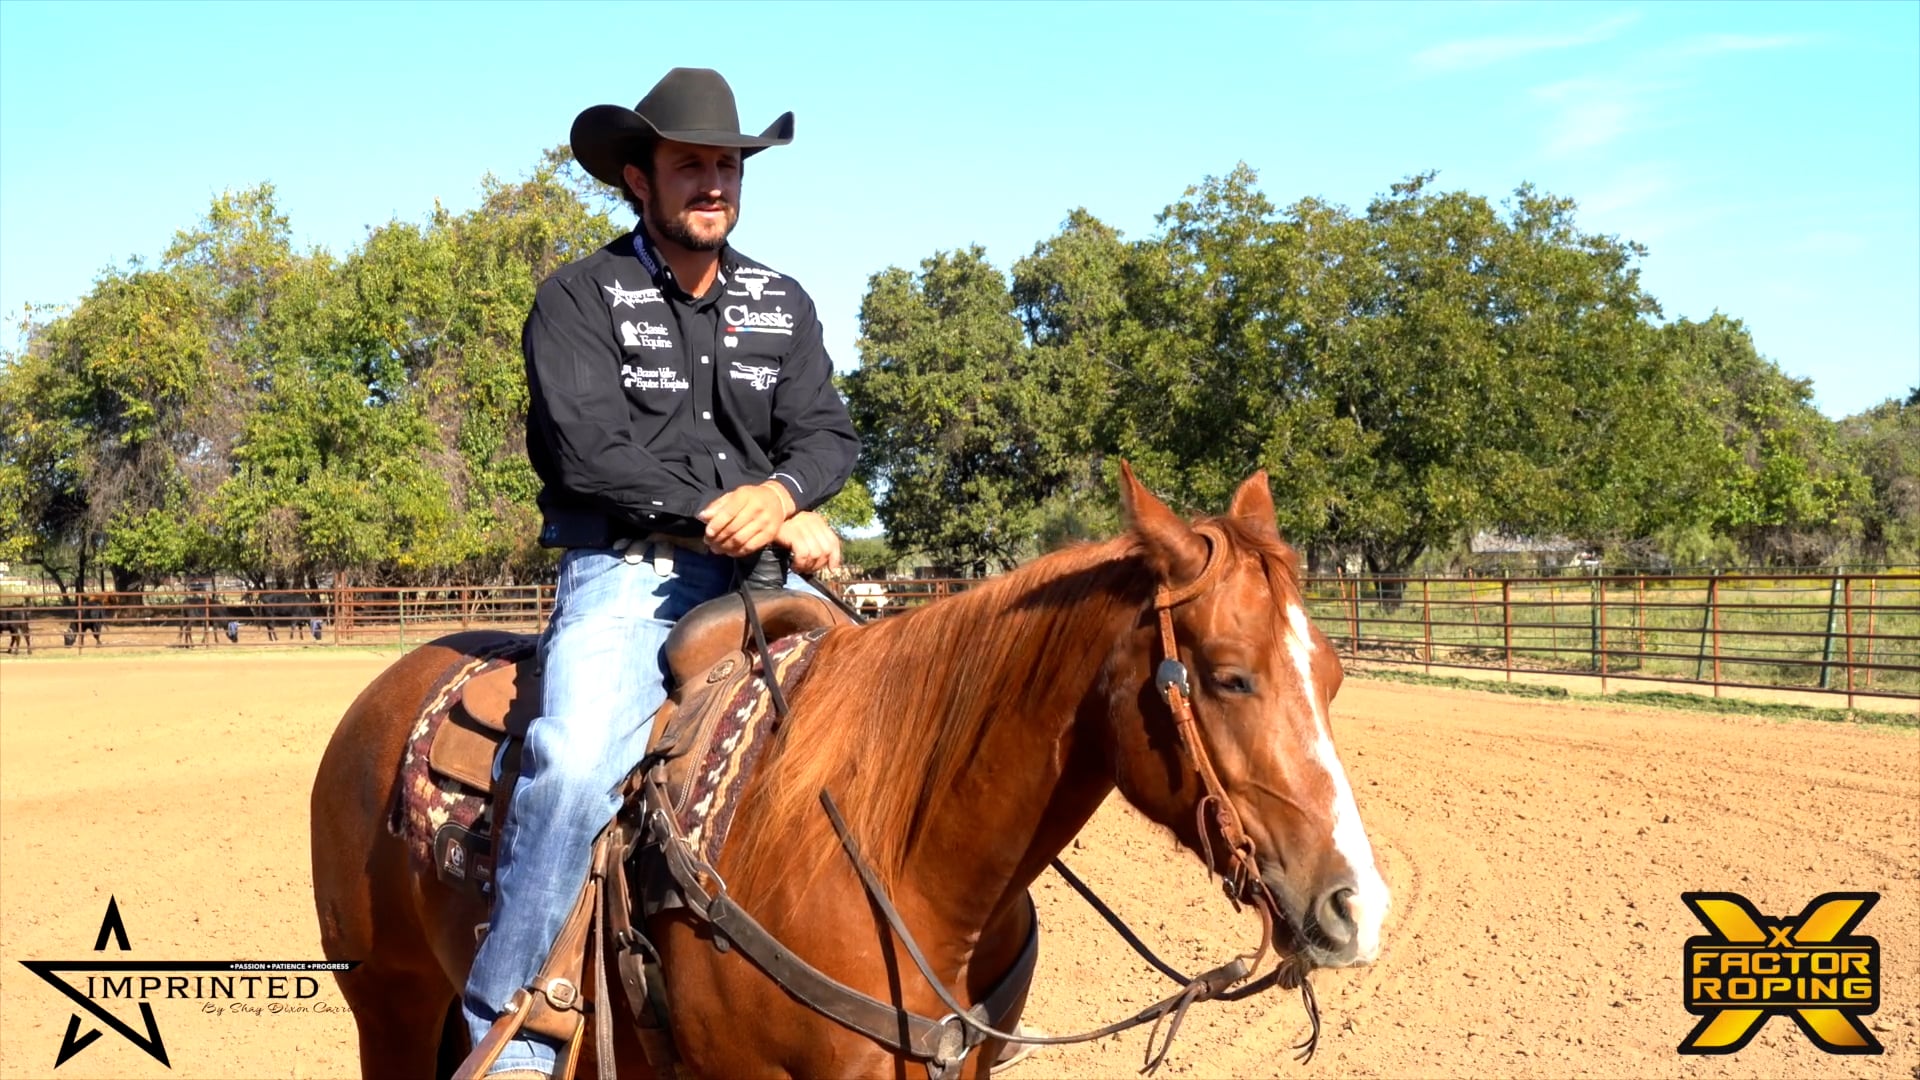 Shay Carroll Mimicking Rider Behavior